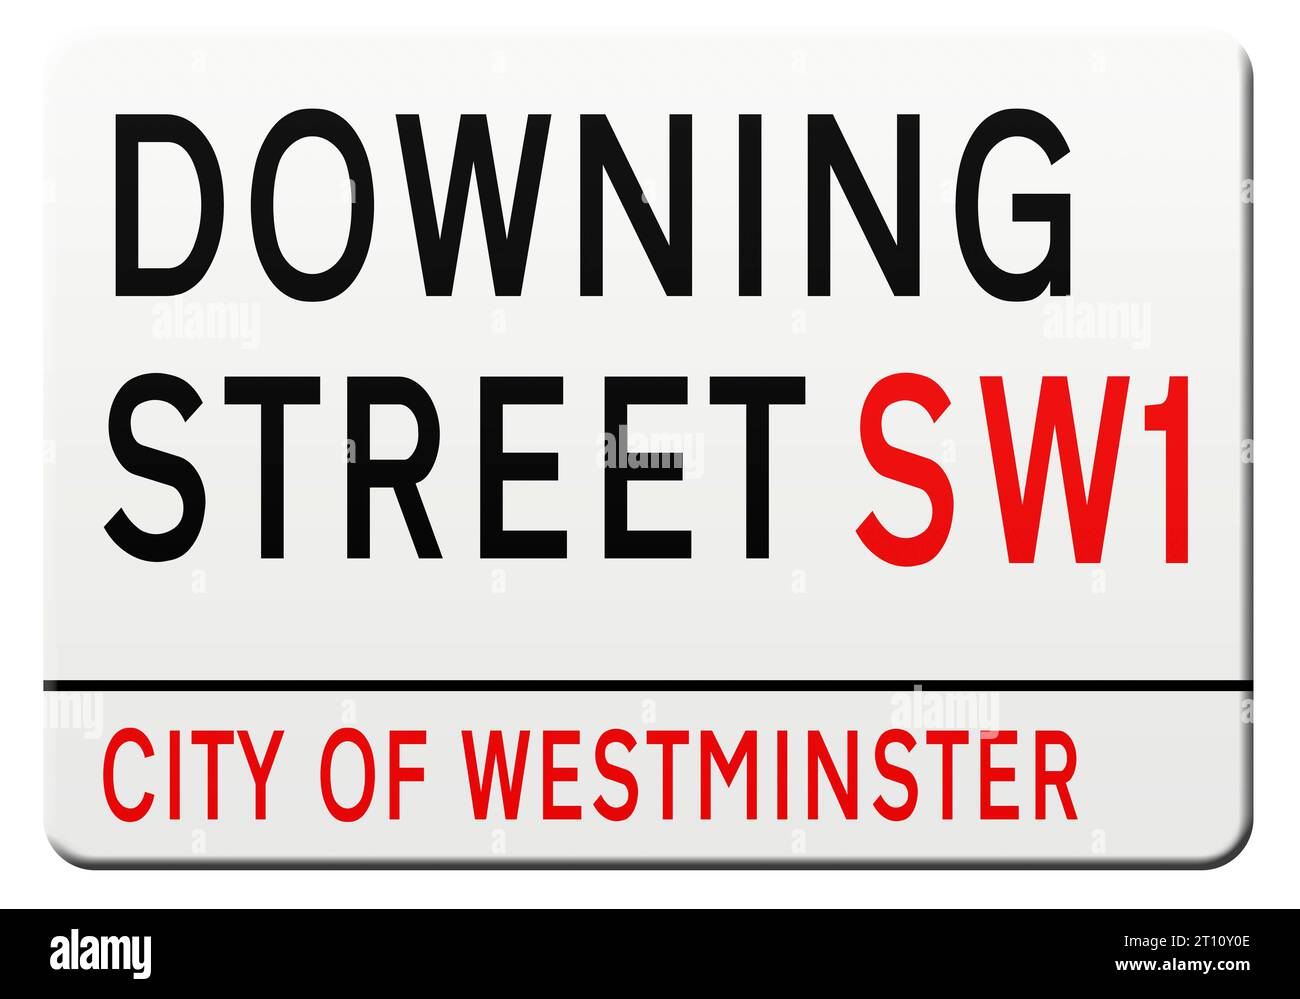 Illustrazione digitale - segnaletica stradale di Londra - Downing Street. Credito: Imago/Alamy Live News Foto Stock